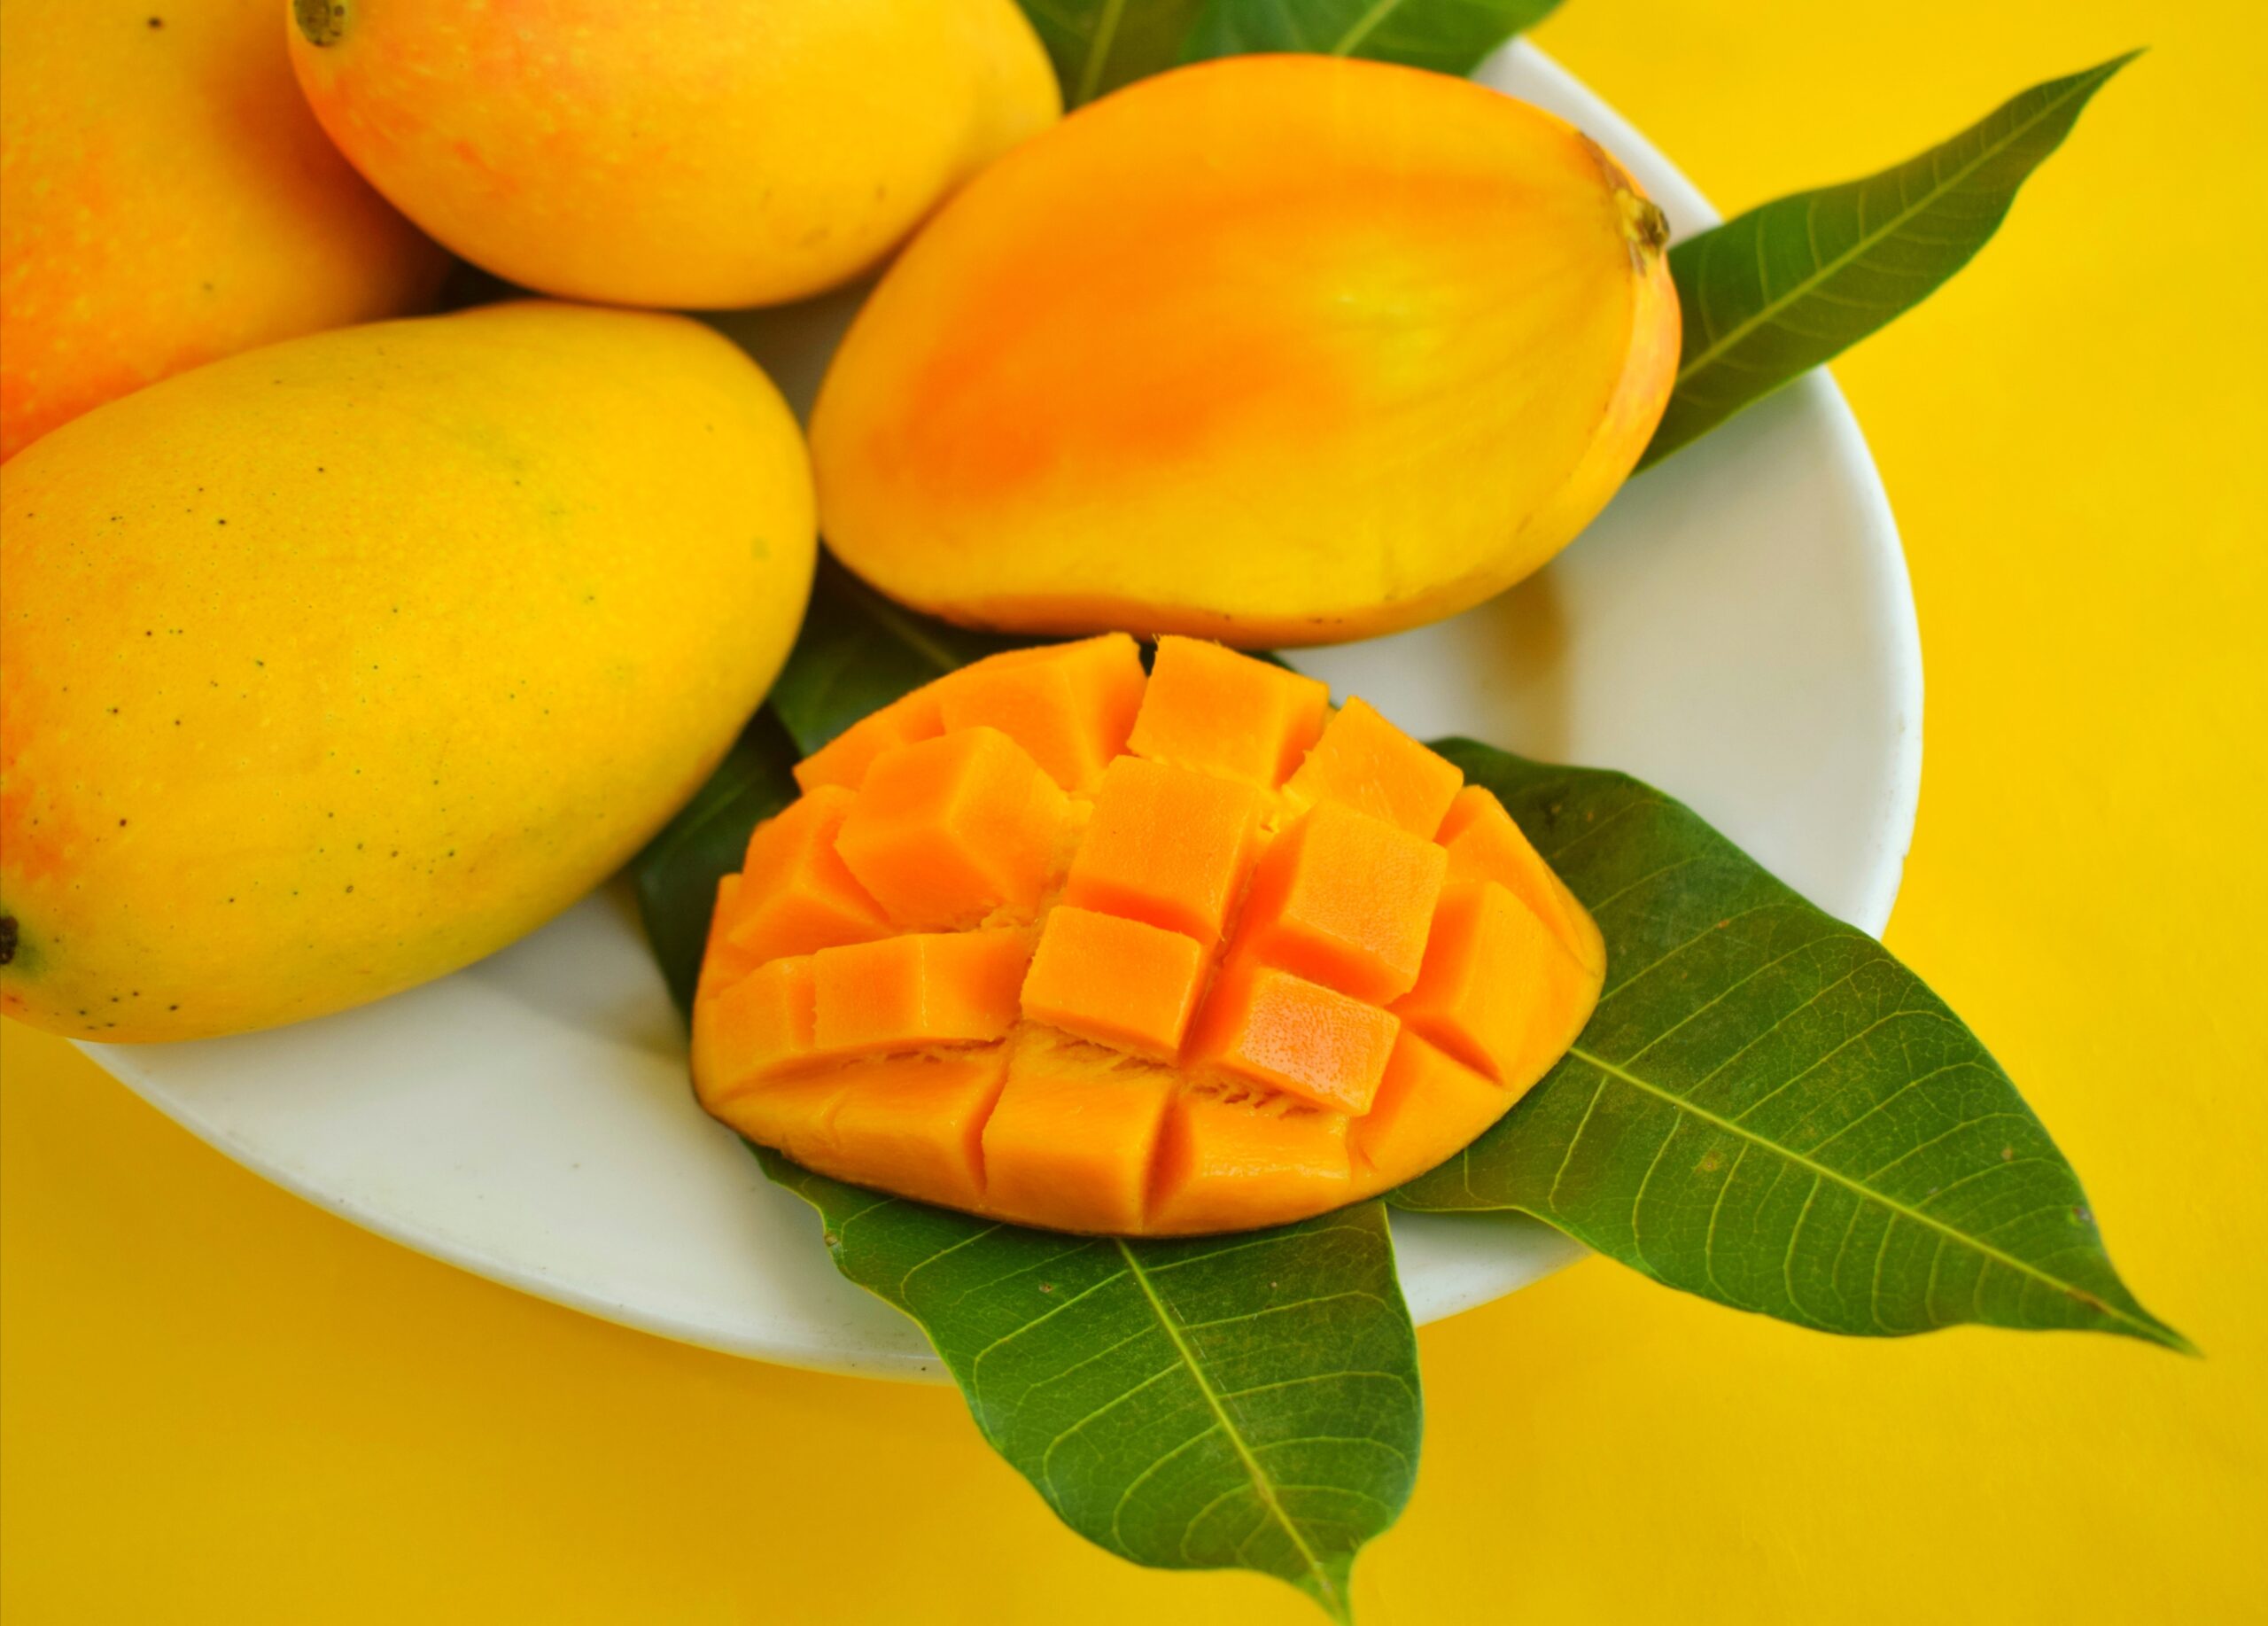 Obrane i nie obrane mango na talerzu na żółtym tle